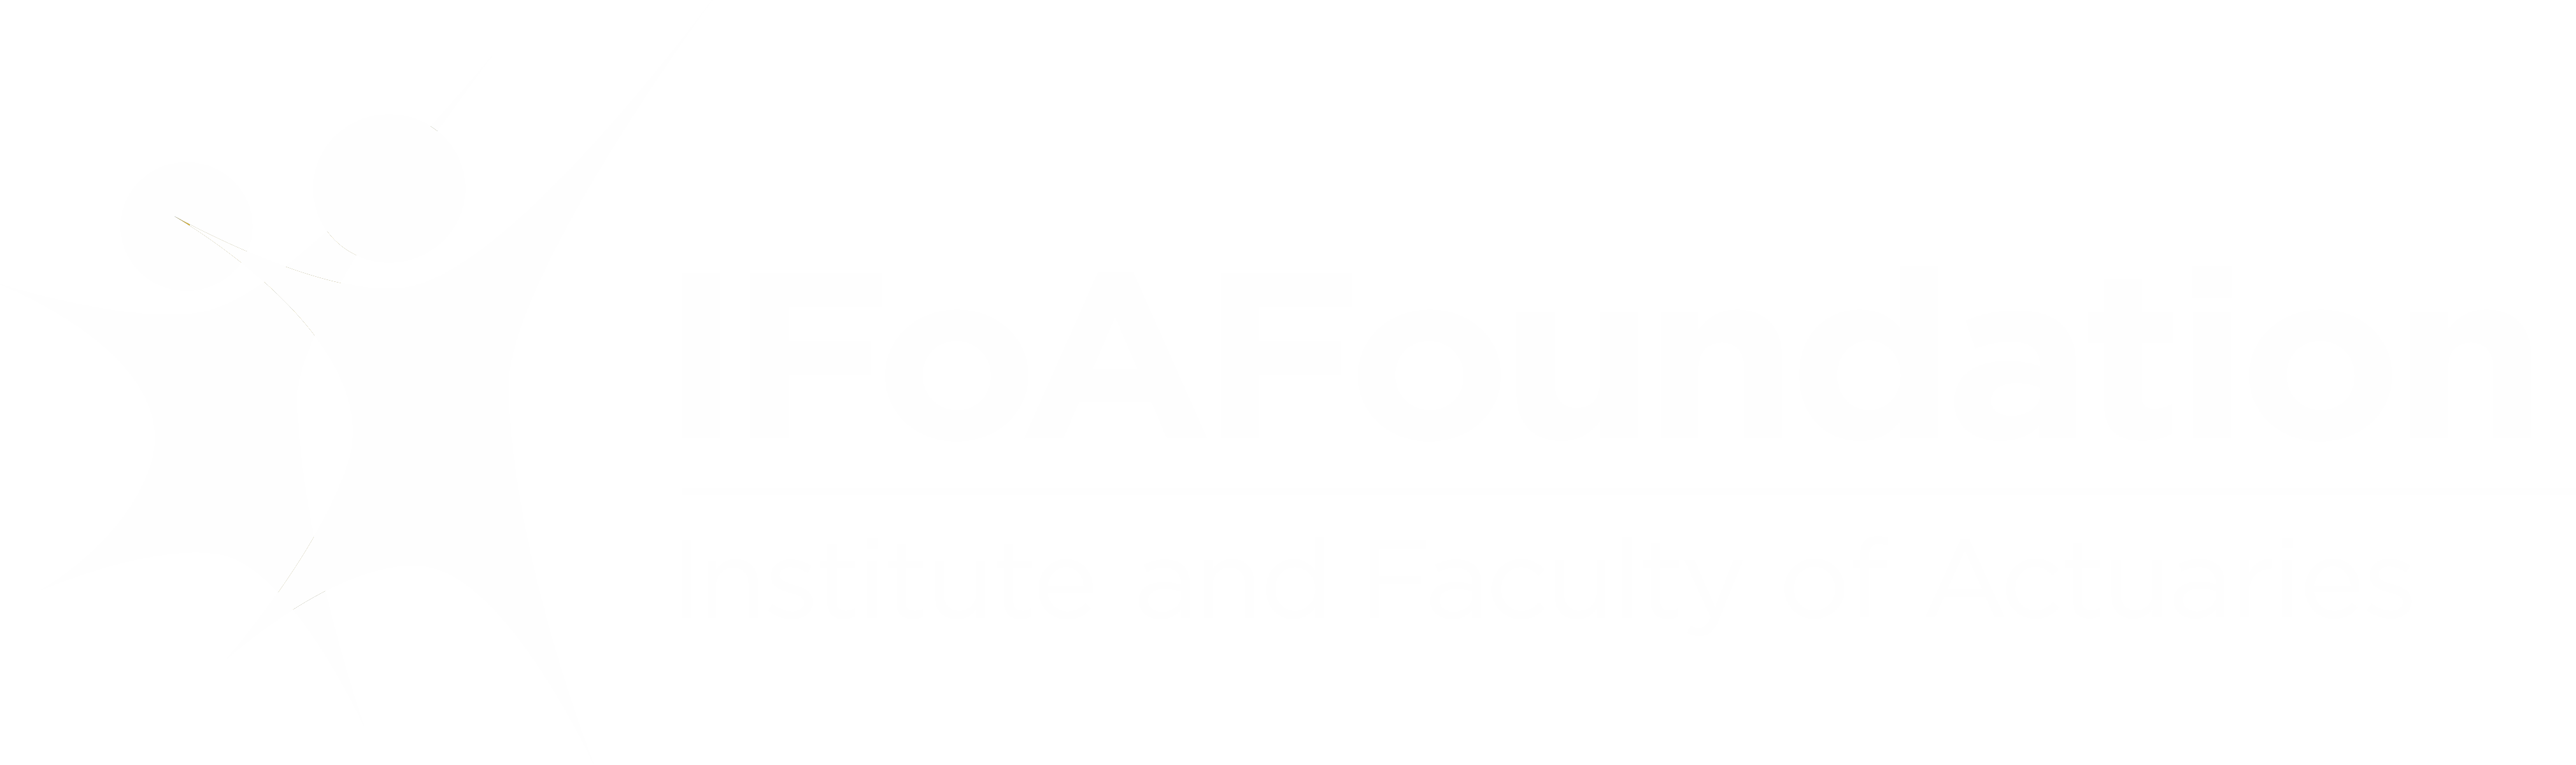 IFoA Foundation